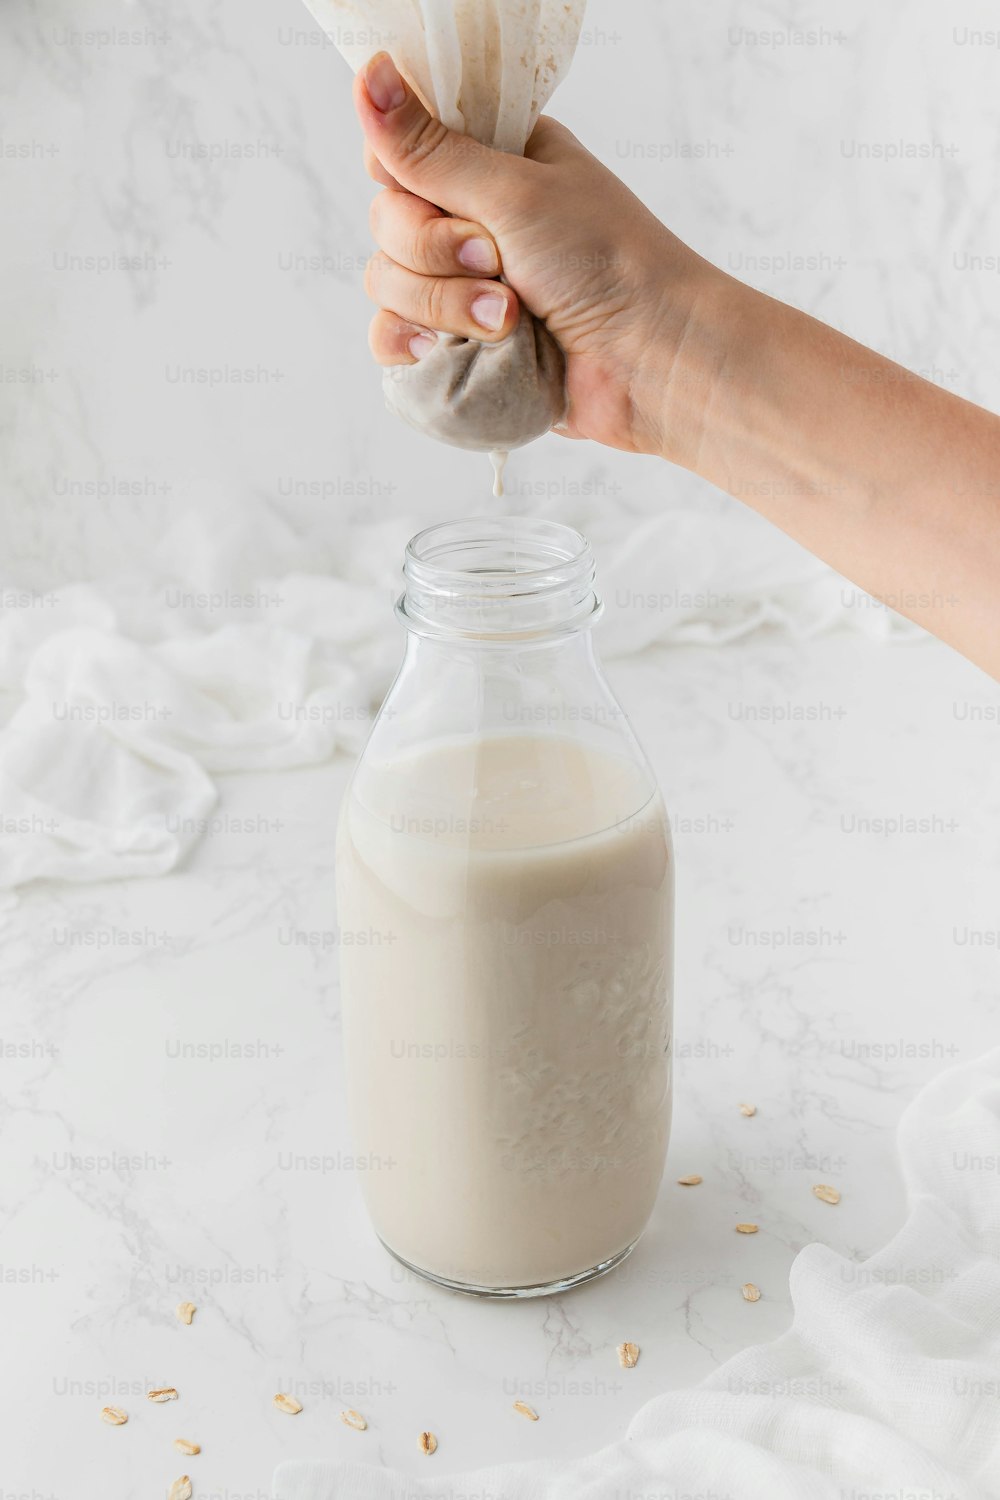 uma pessoa está derramando um copo de leite em um frasco